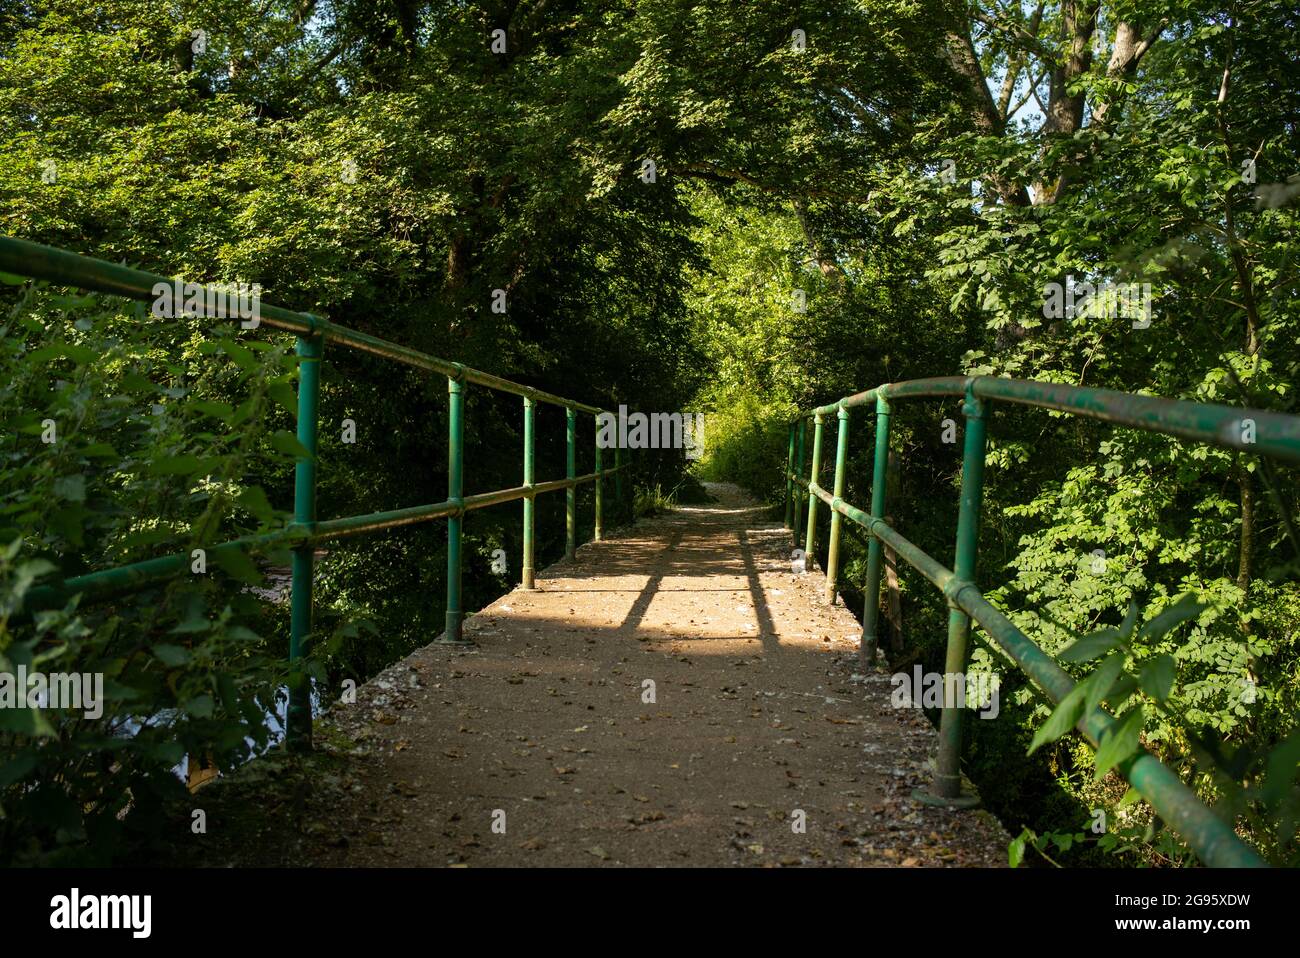 Eine eingleisige Brücke, die zu einem überwucherten Fußweg führt, mit grünen Handschienen, die Leitlinien verwenden, um die Perspektive zu erweitern. Mögliches Konzeptbild. Stockfoto